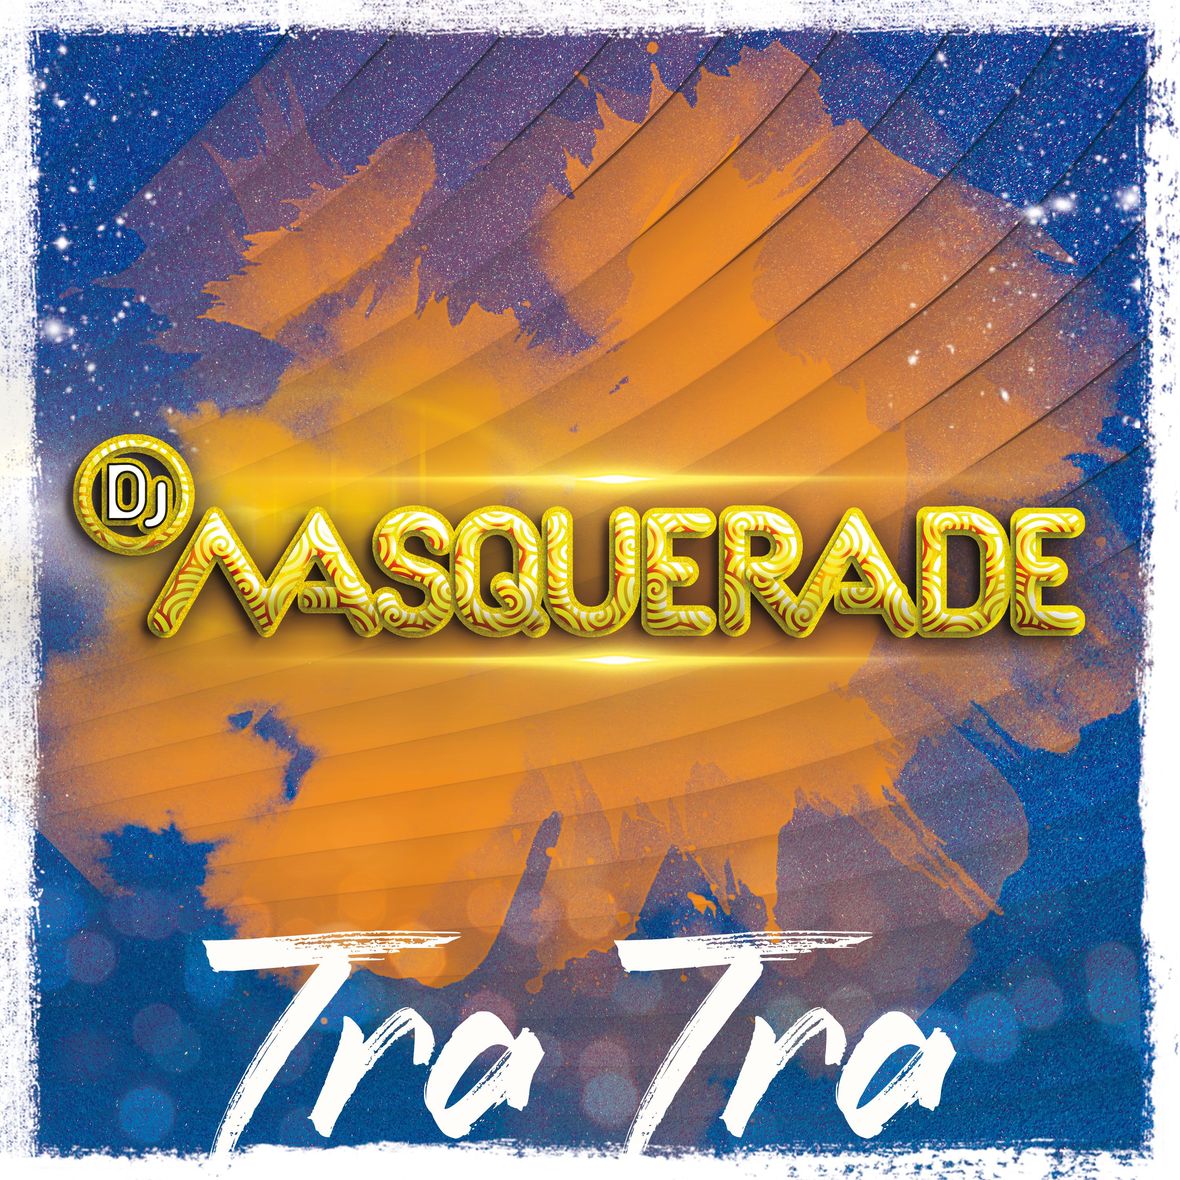 DJ Masquerade - Tra Tra